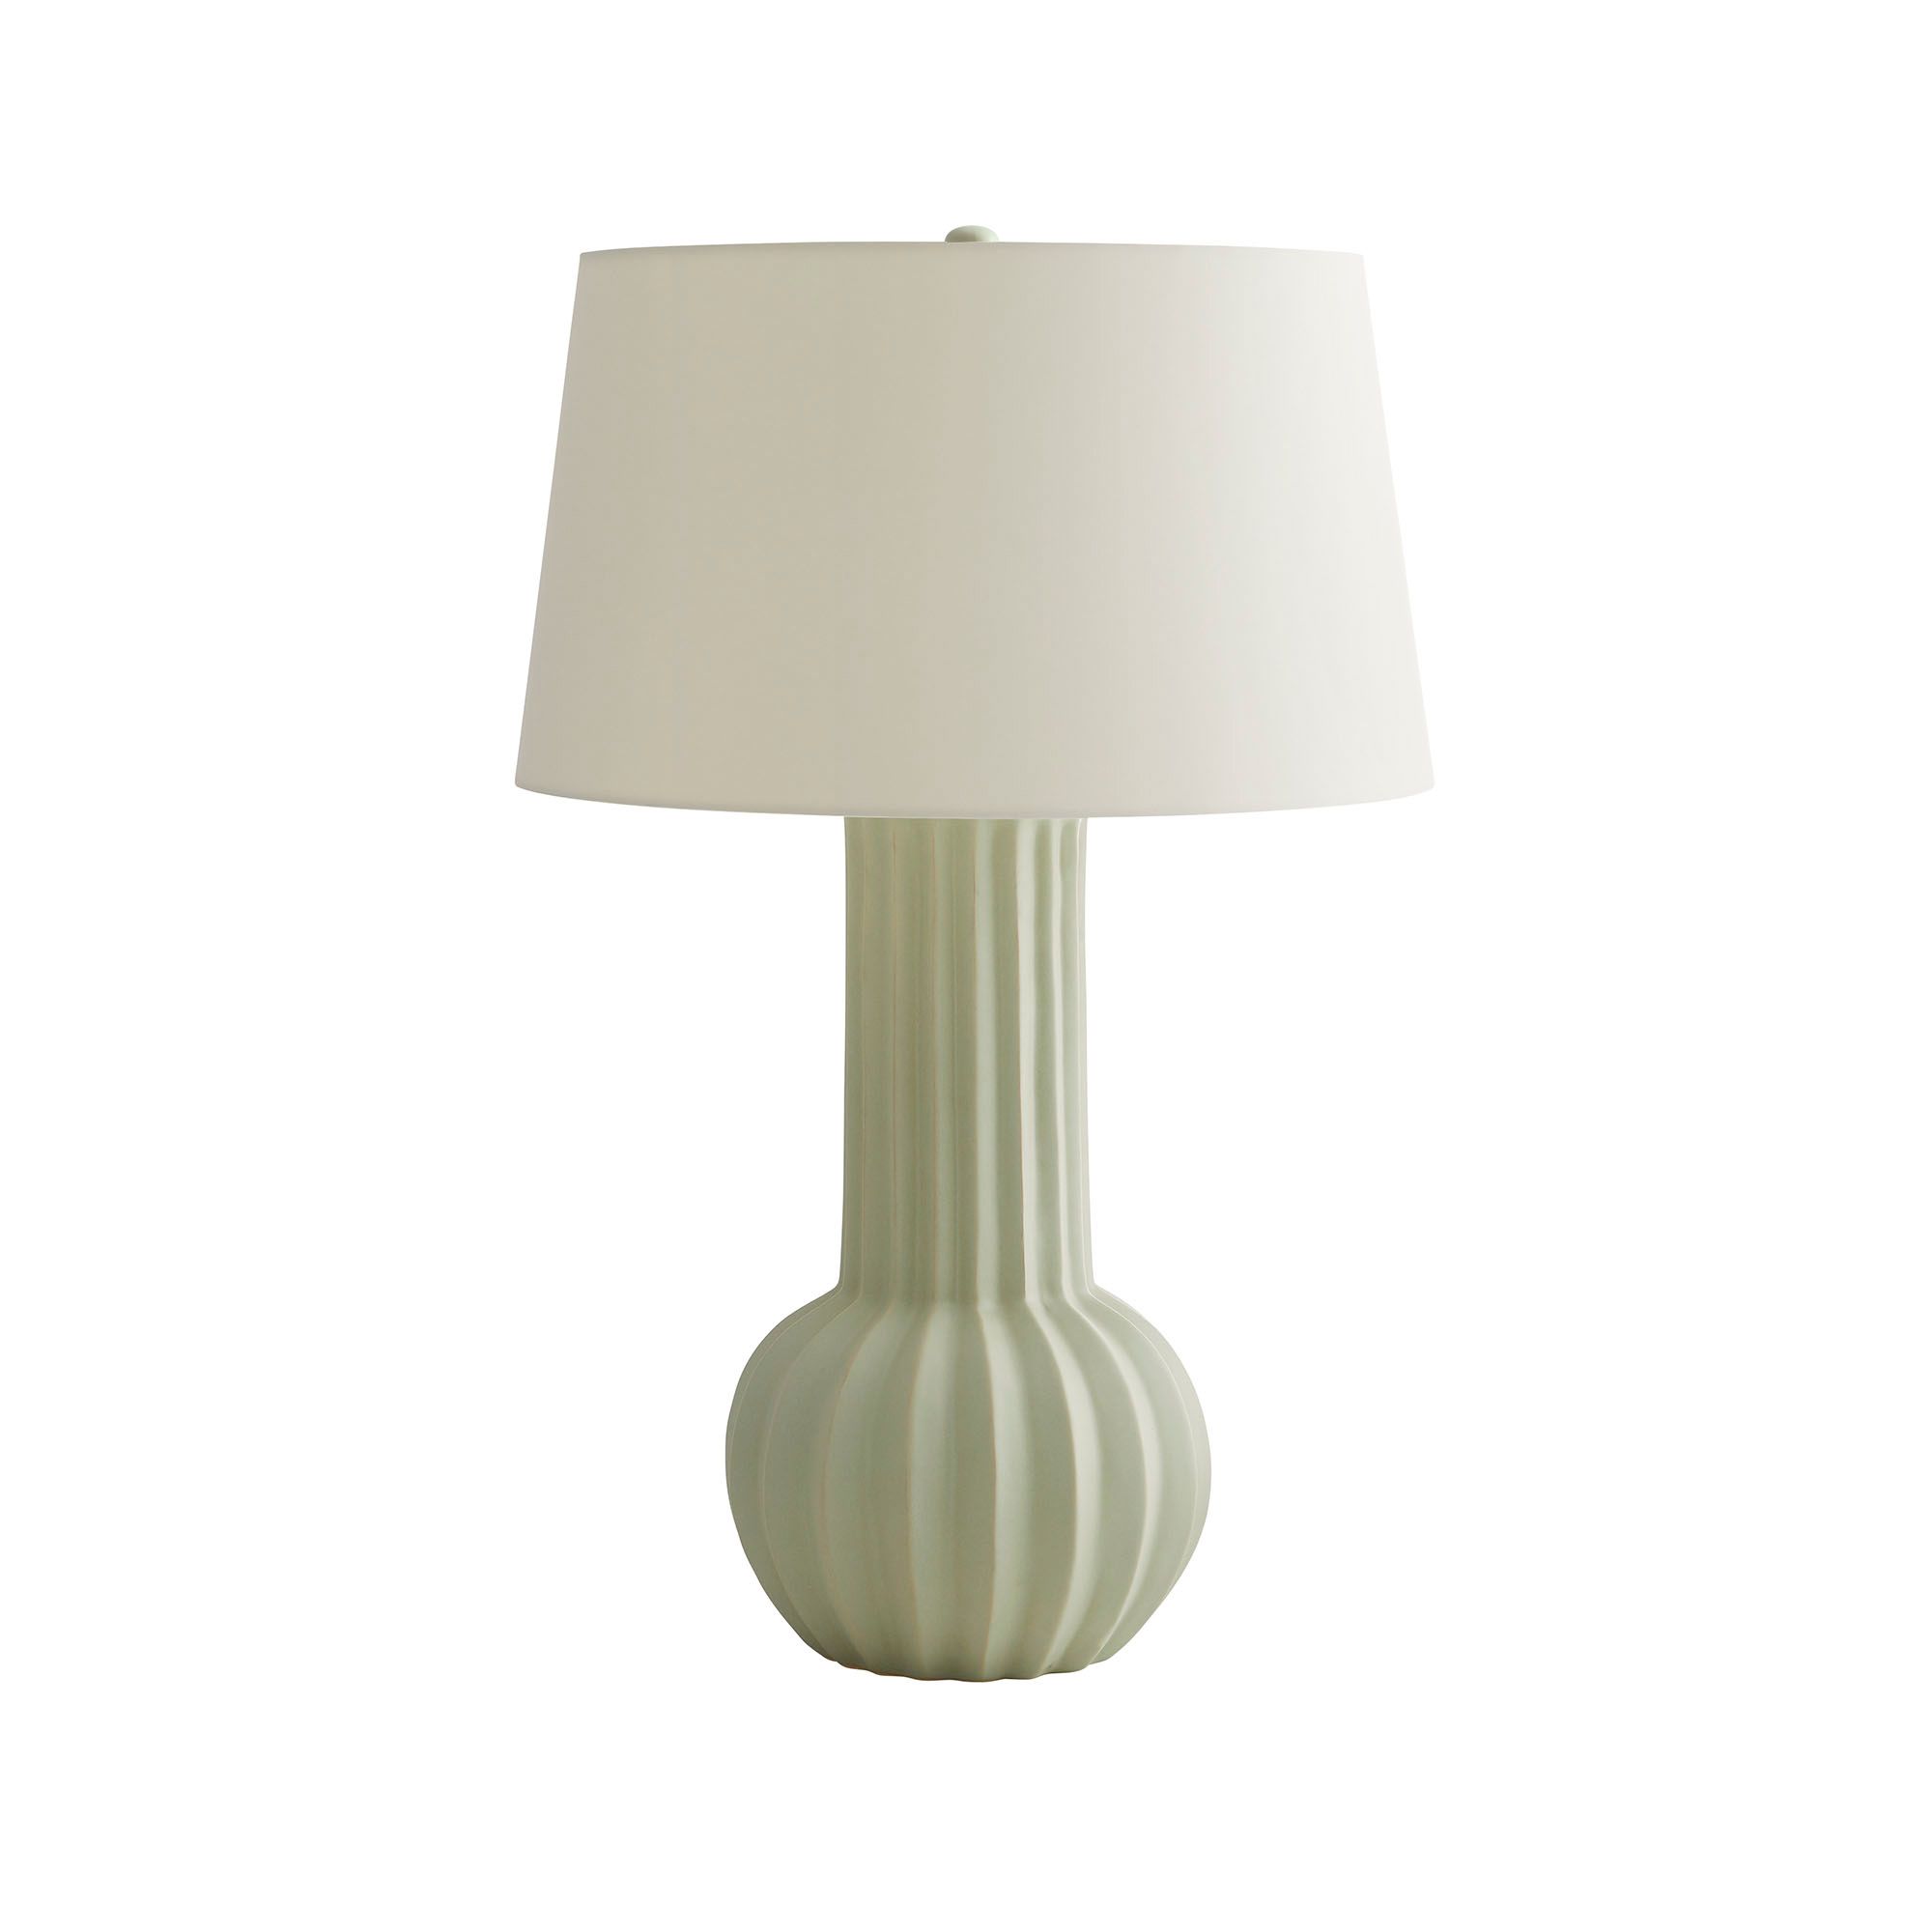 Купить Настольная лампа Lulu Lamp в интернет-магазине roooms.ru